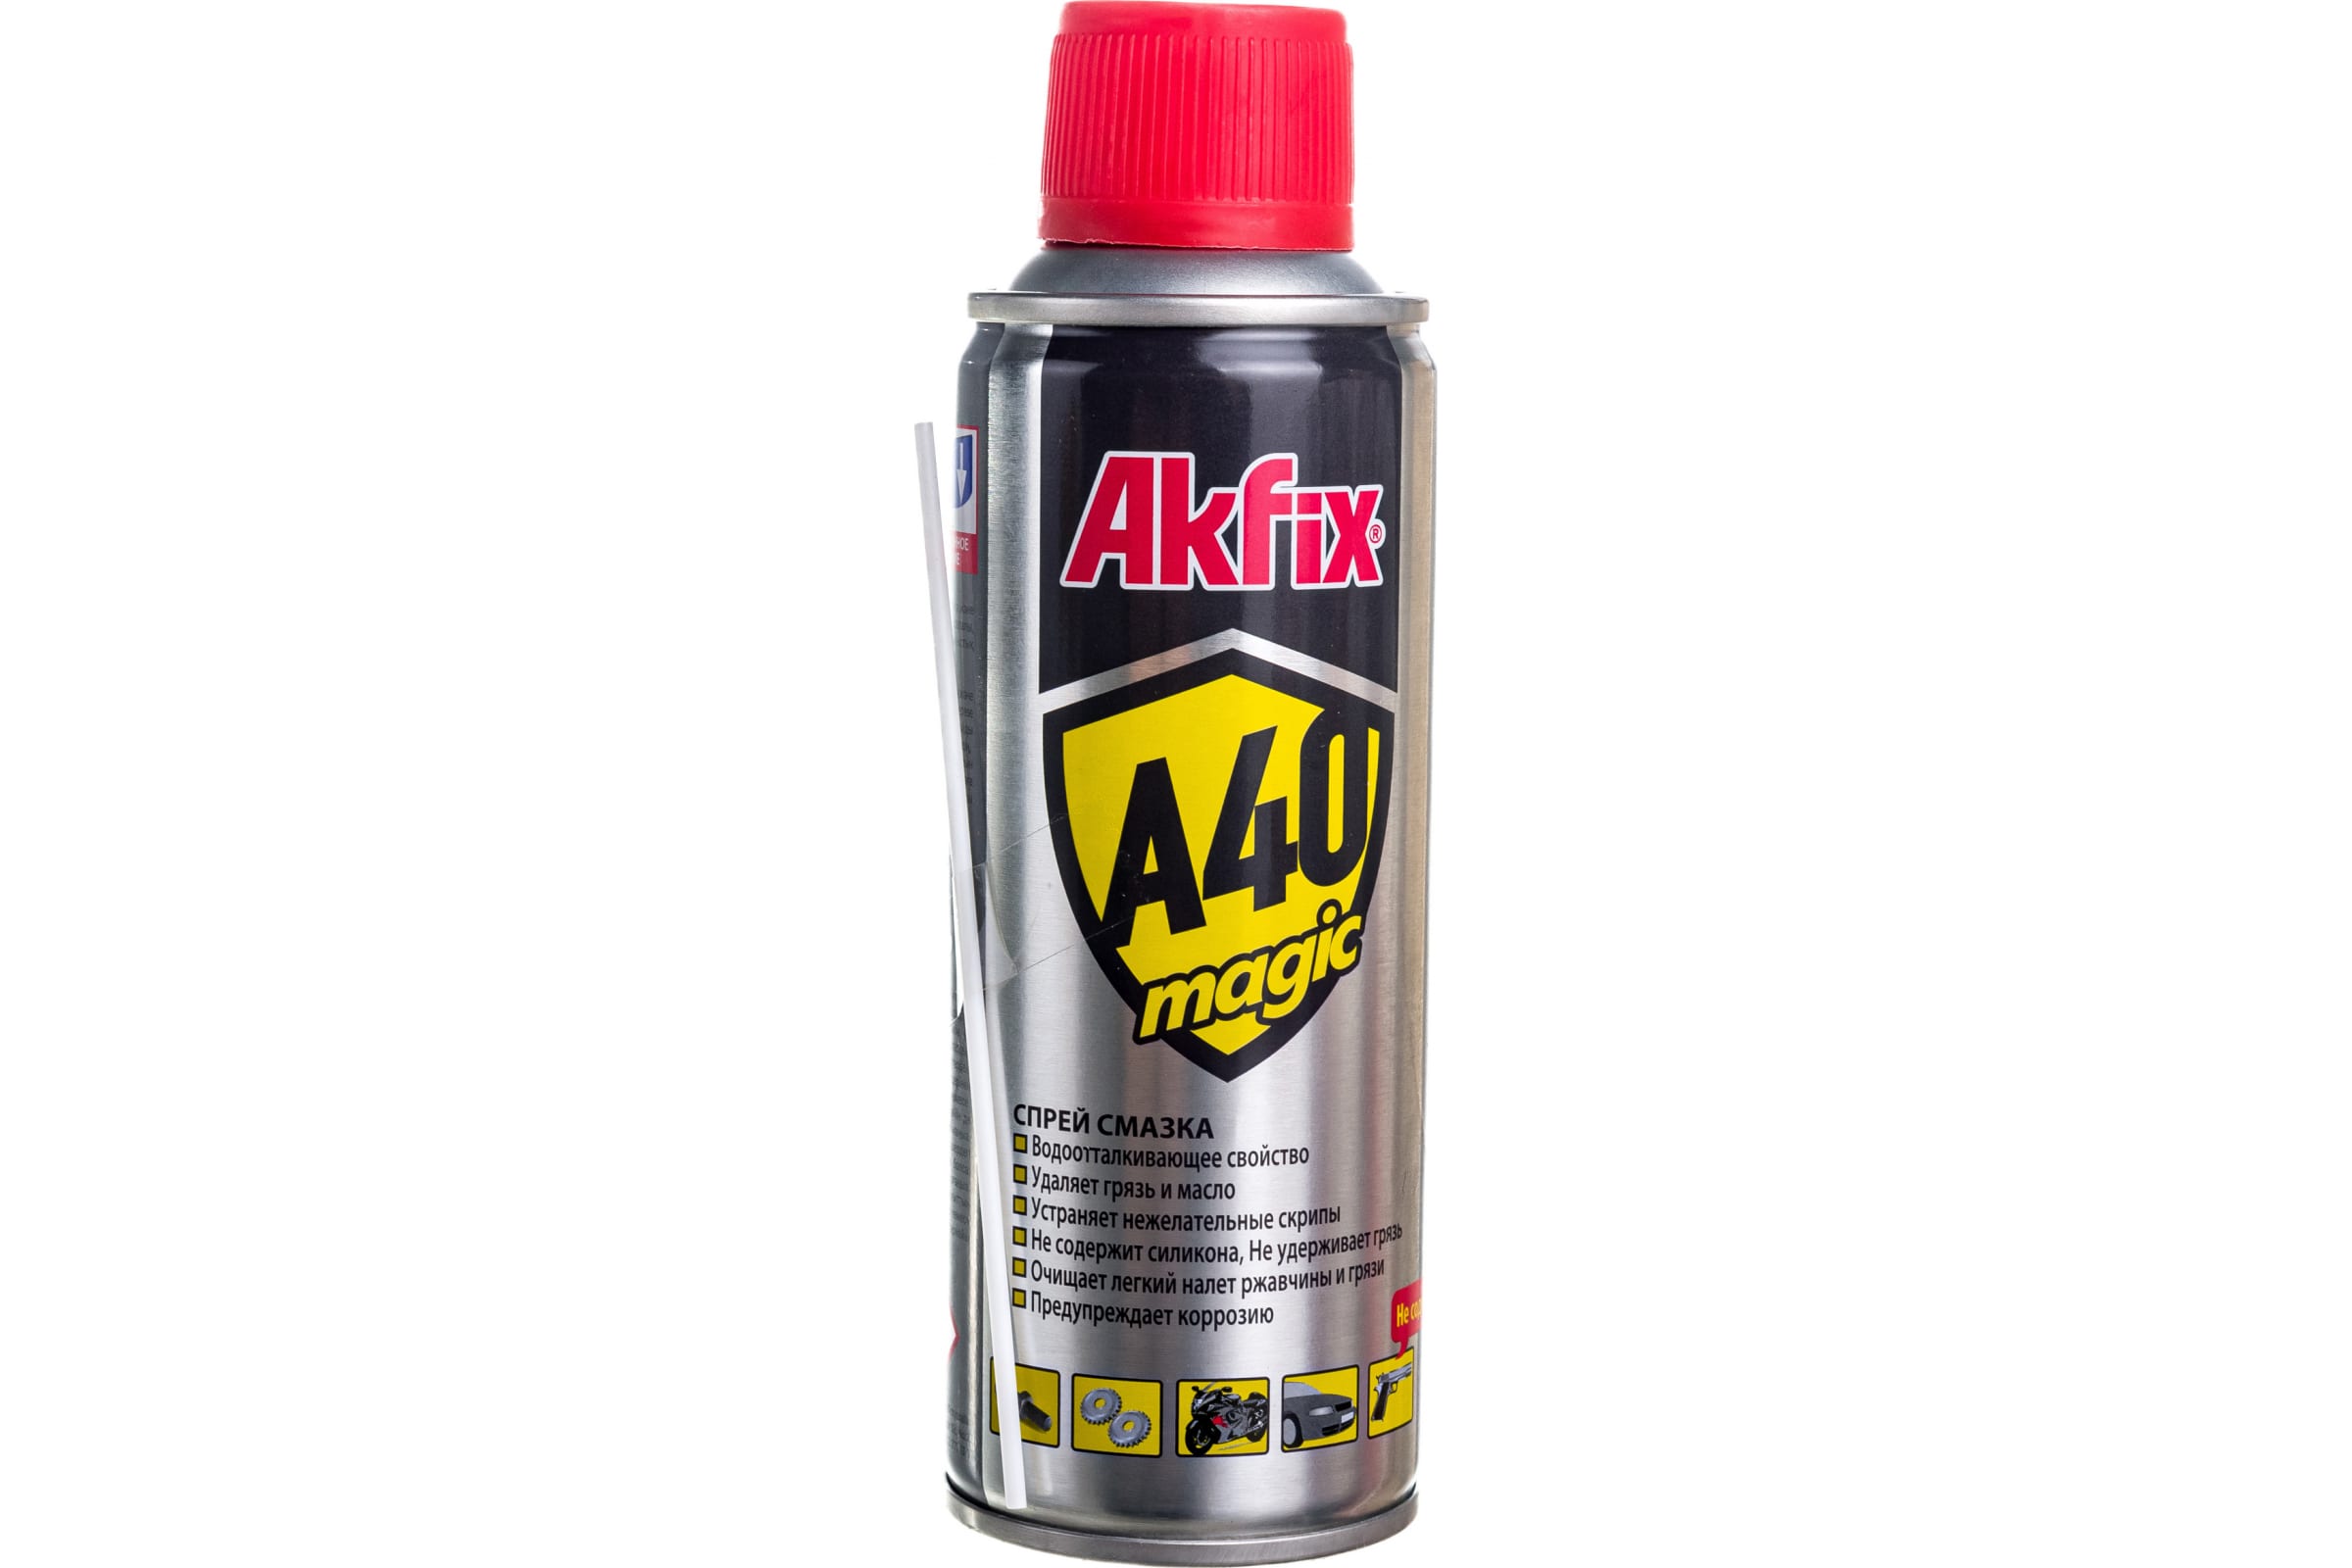 Akfix Универсальная смазка A40 Magic, 200 мл YA420 универсальная силиконовая смазка kudo